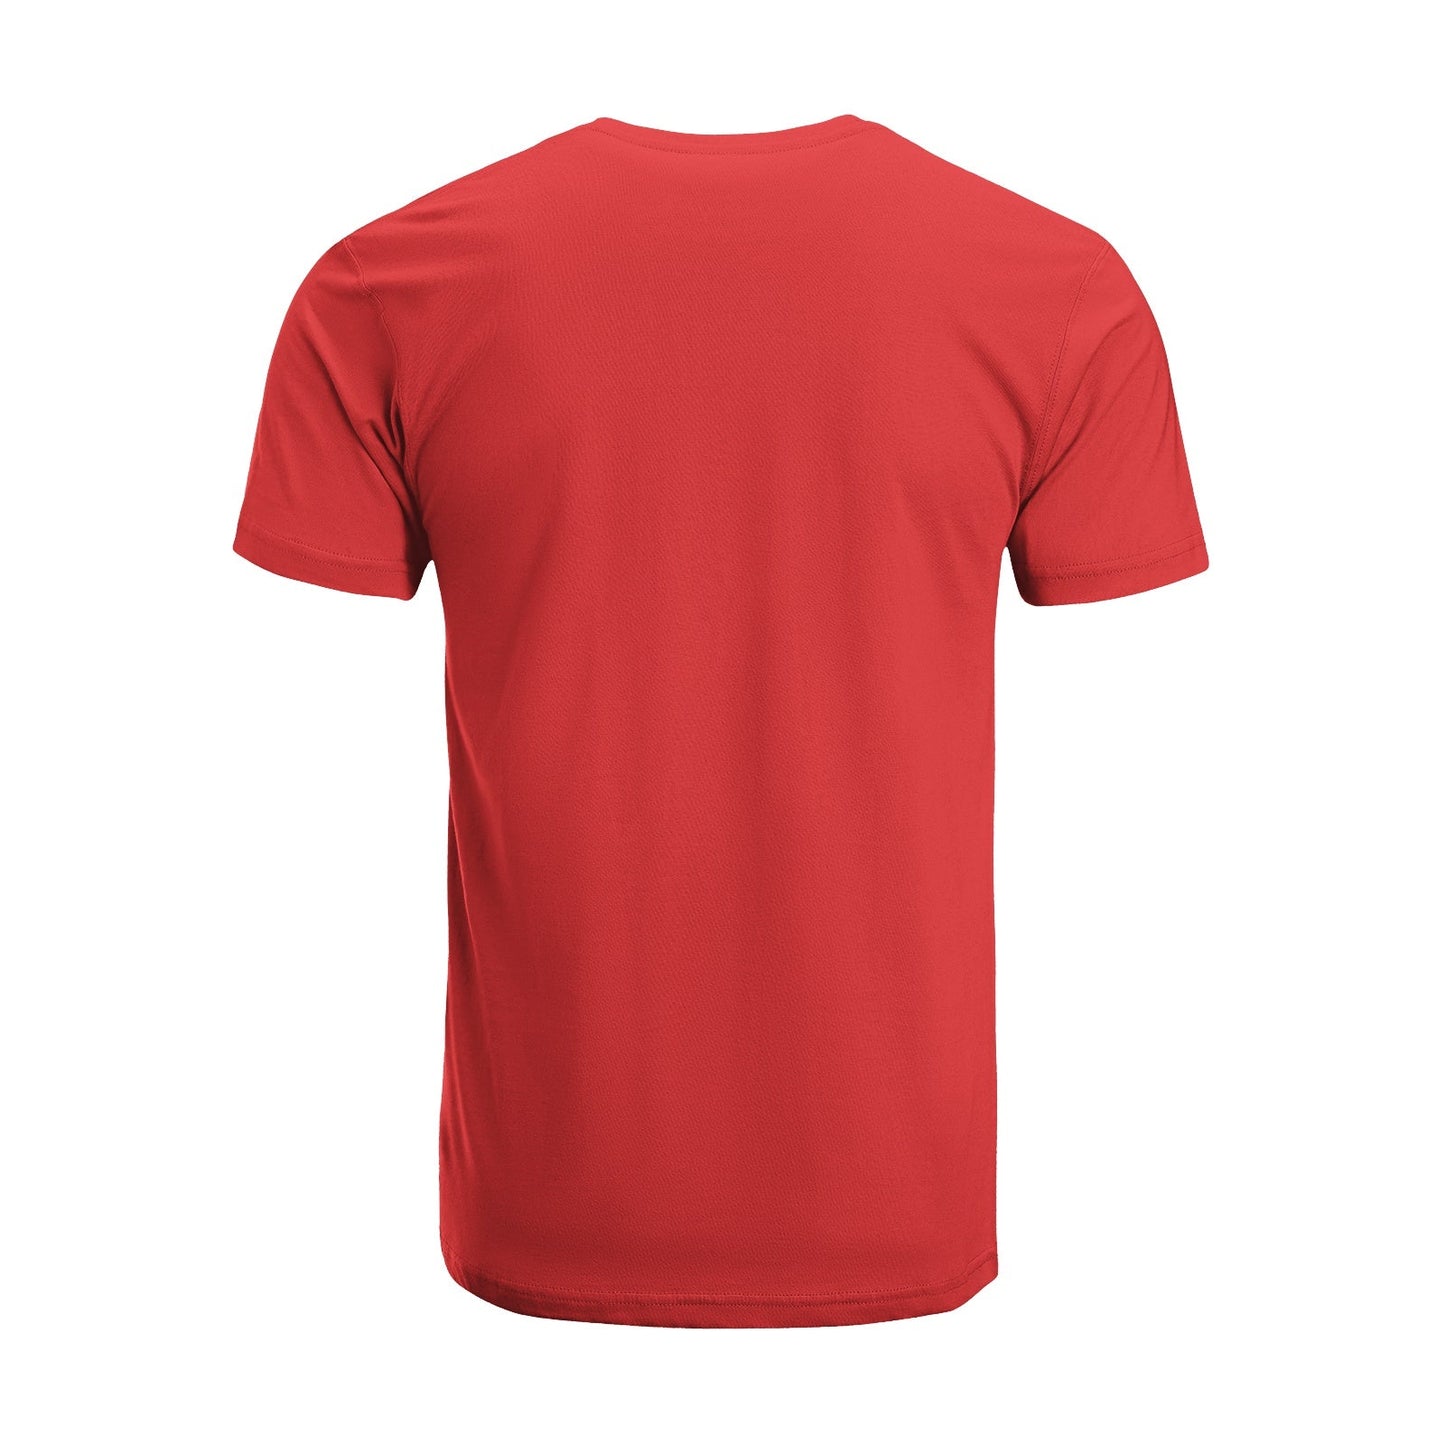 Unisex Short Sleeve Crew Neck Cotton Jersey T-Shirt TRUCK 19